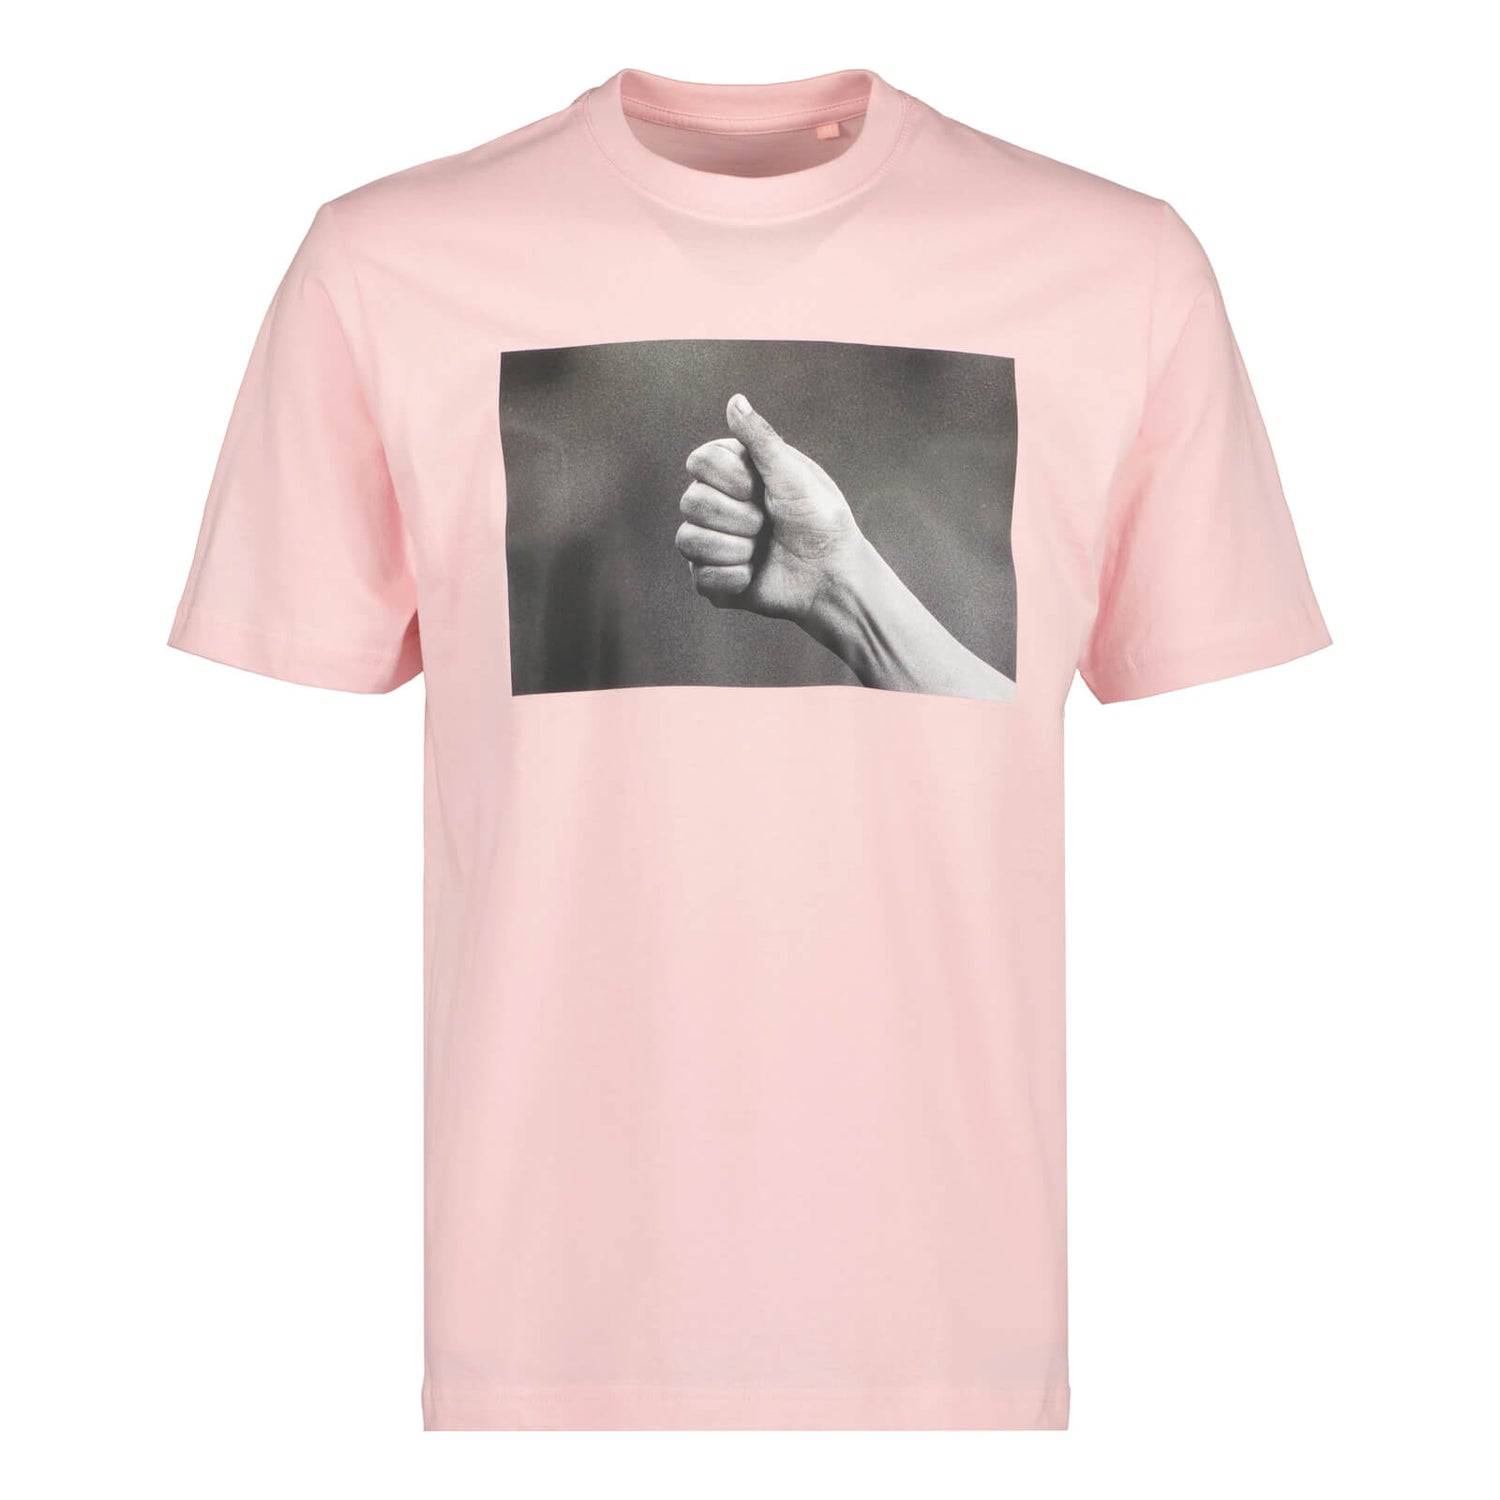 Littipeukku Classic T-paita, Vaaleanpunainen